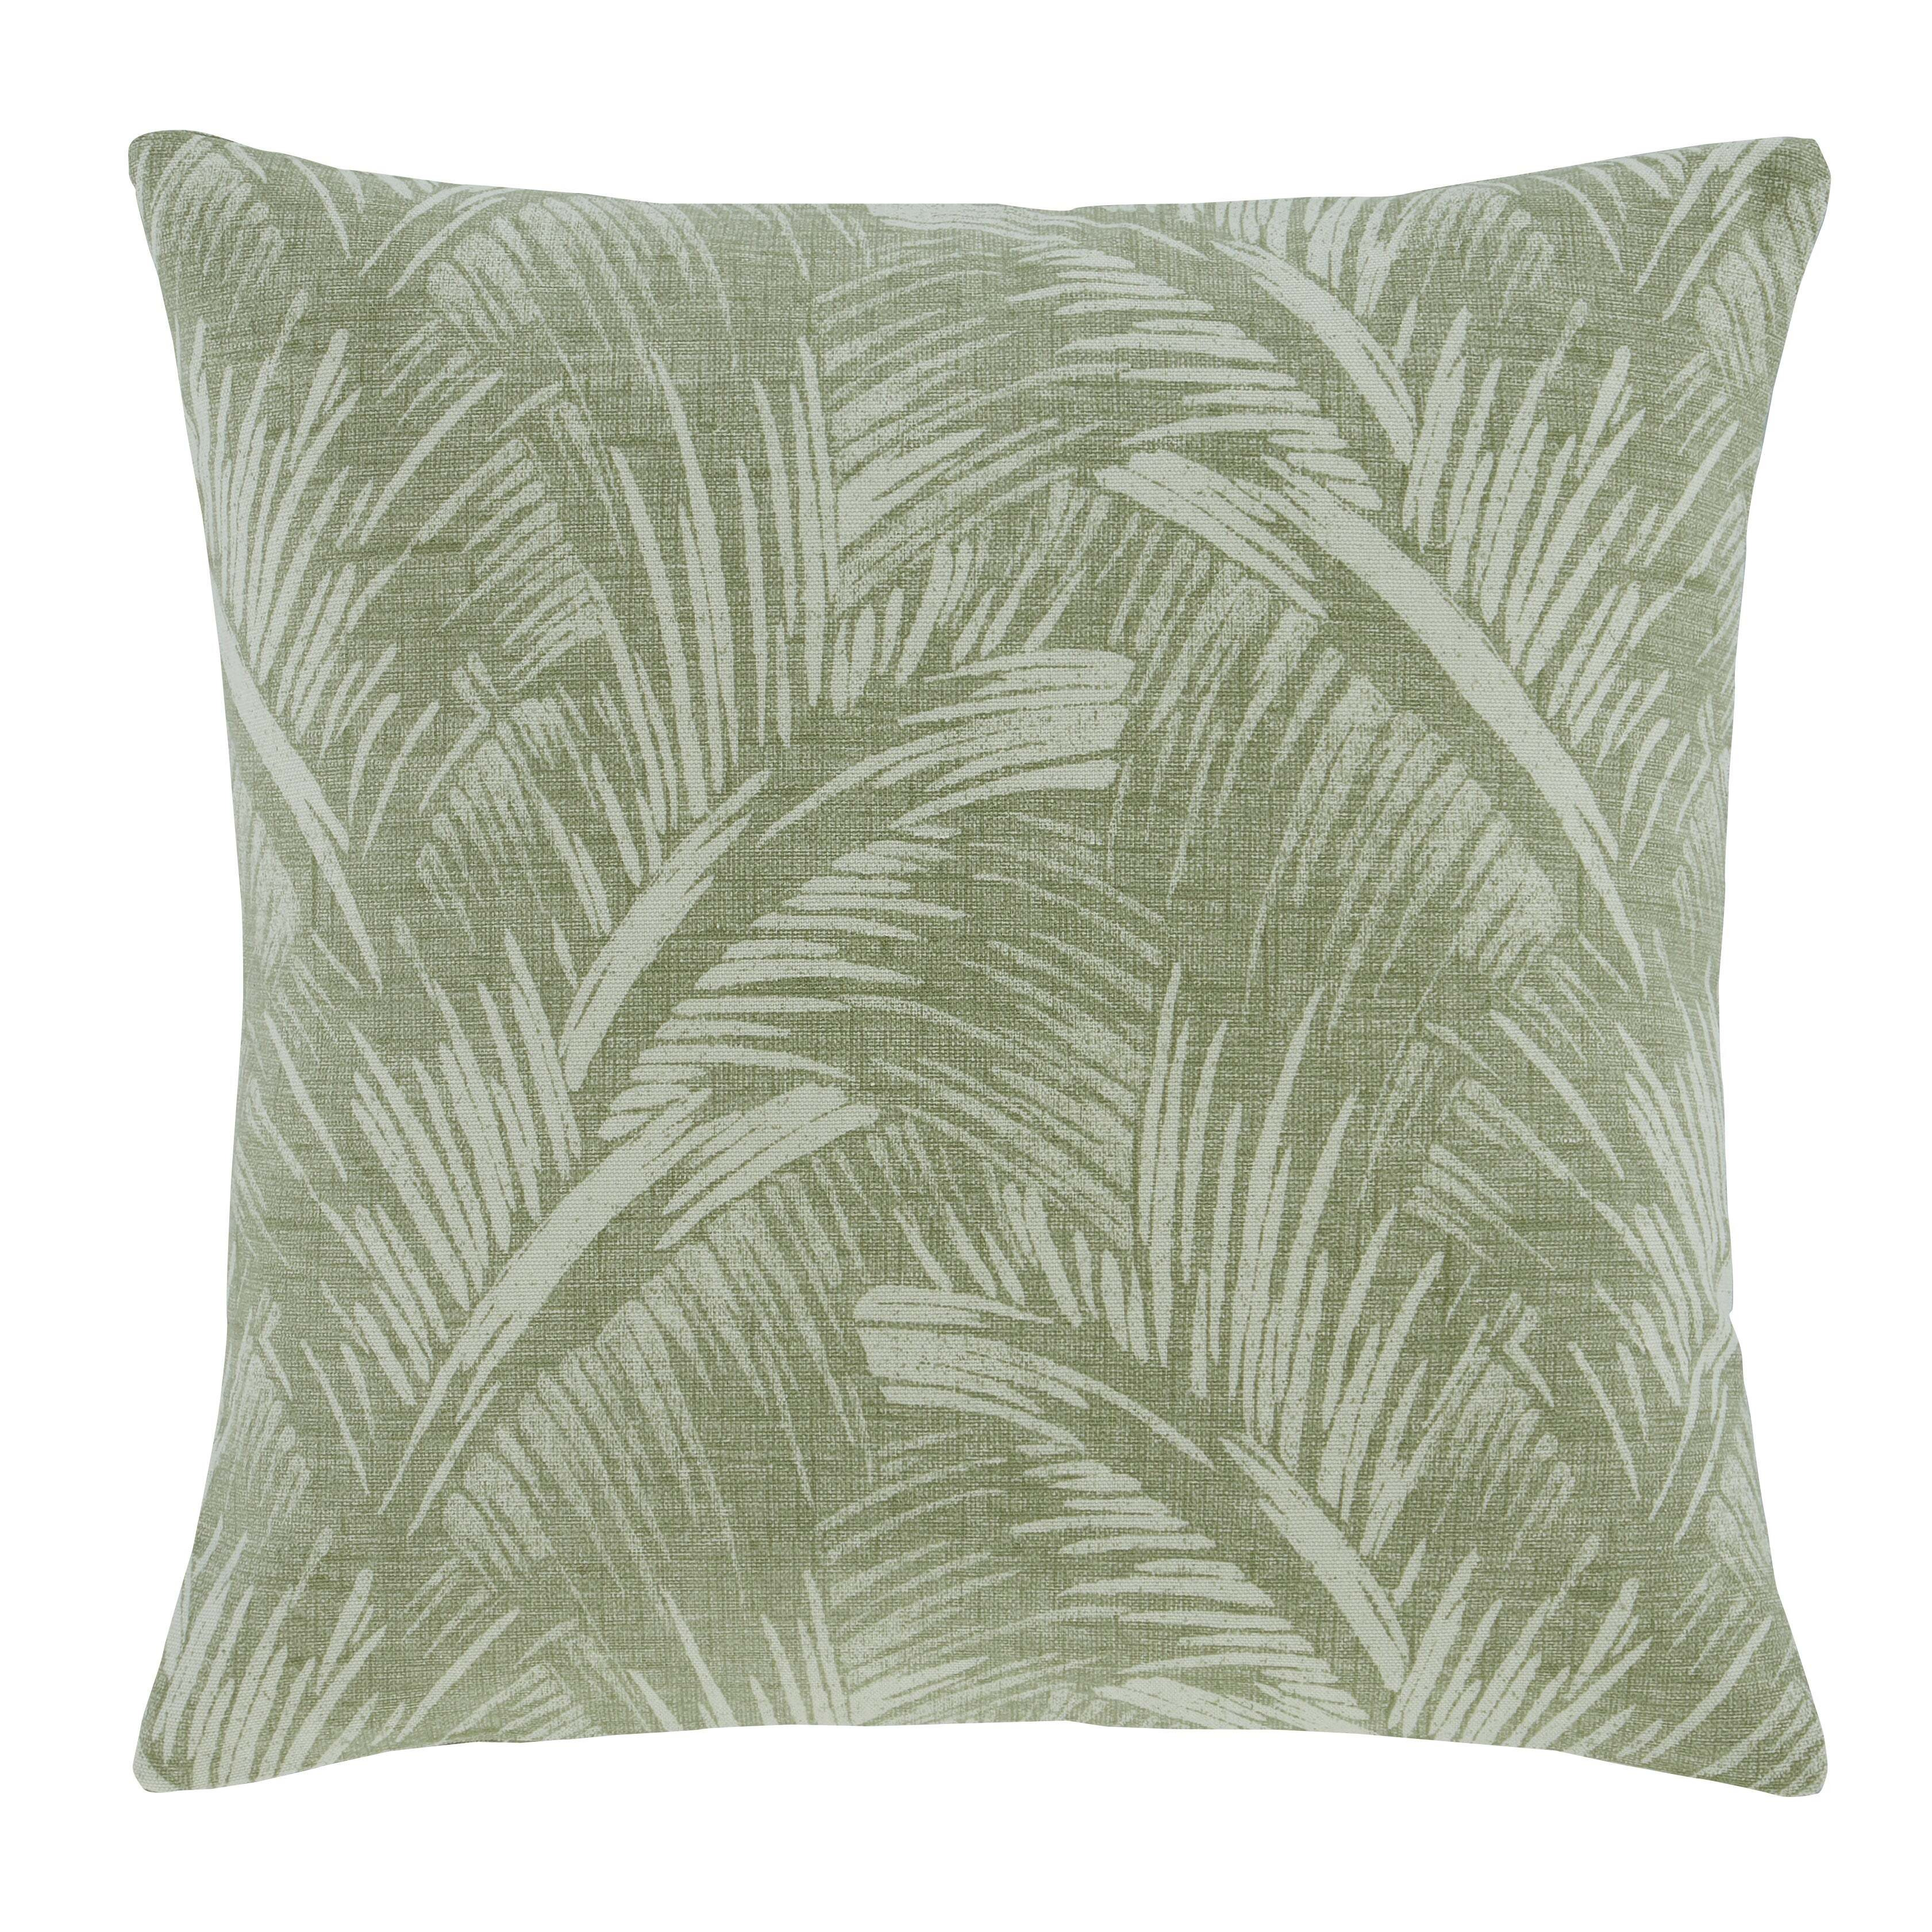 Palm Print Cushion Cover Sage